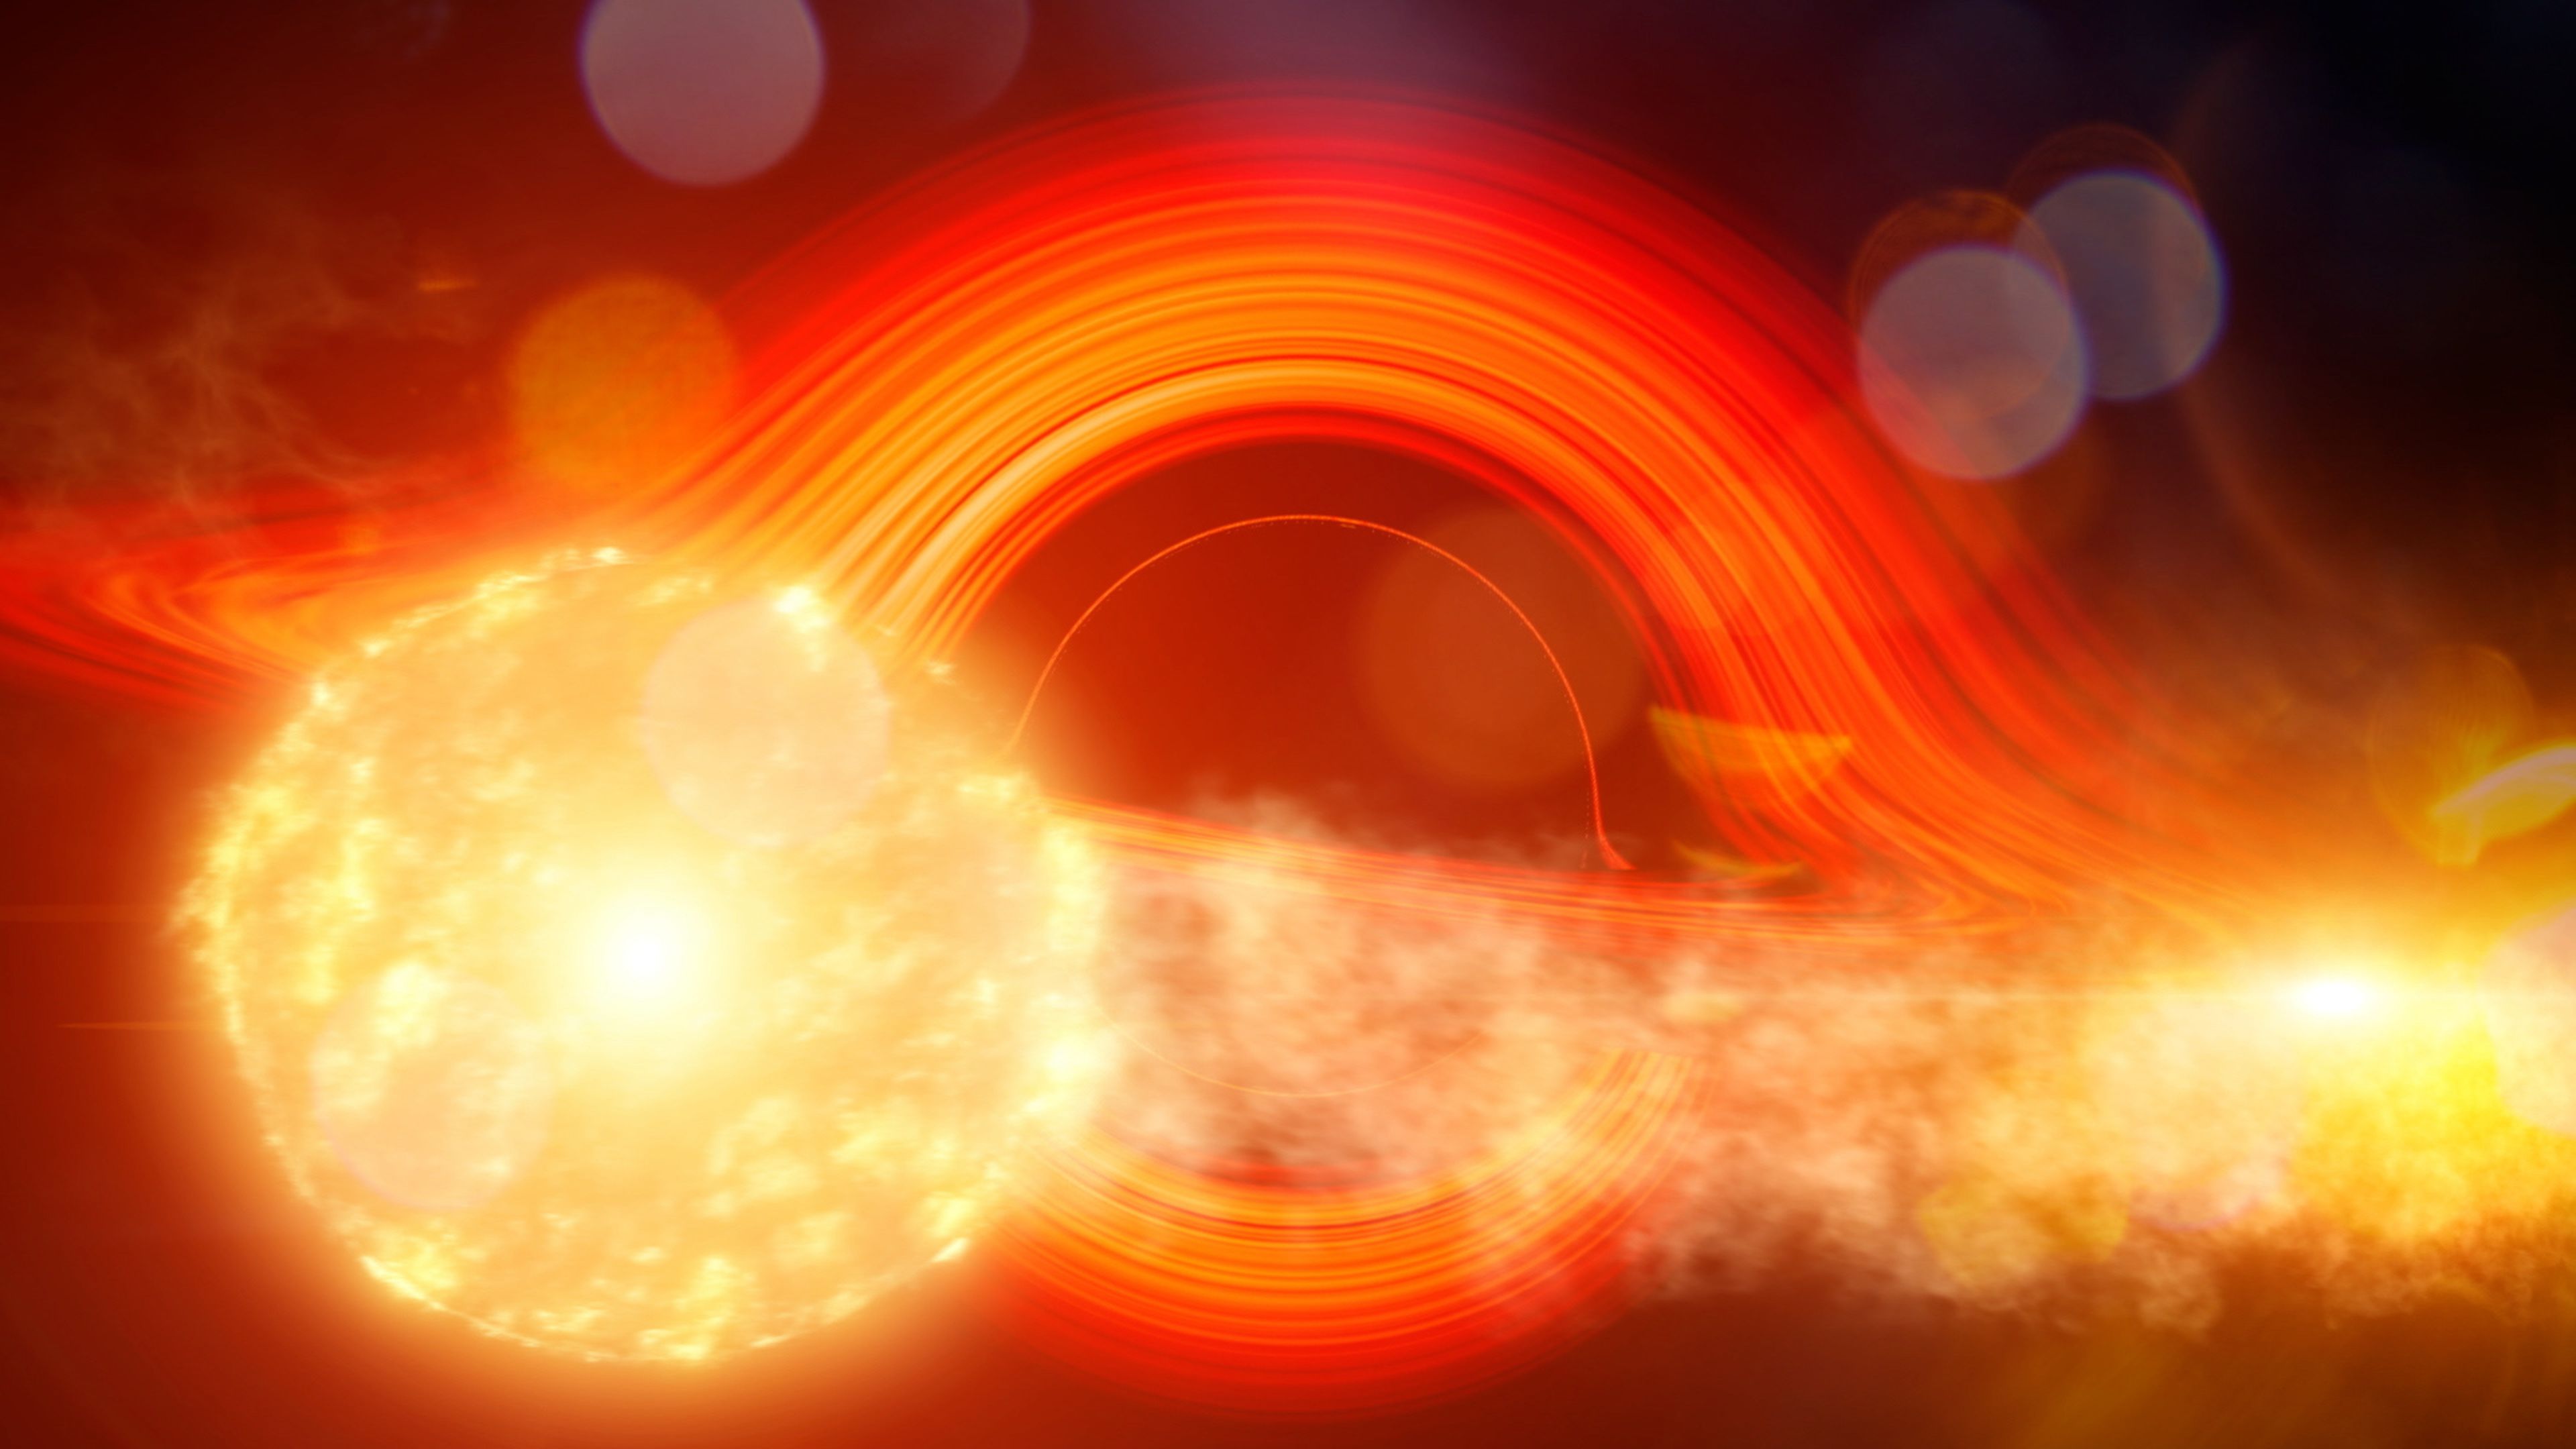 Imagen de la estrella gigante a su paso por el agujero negro supermasivo.